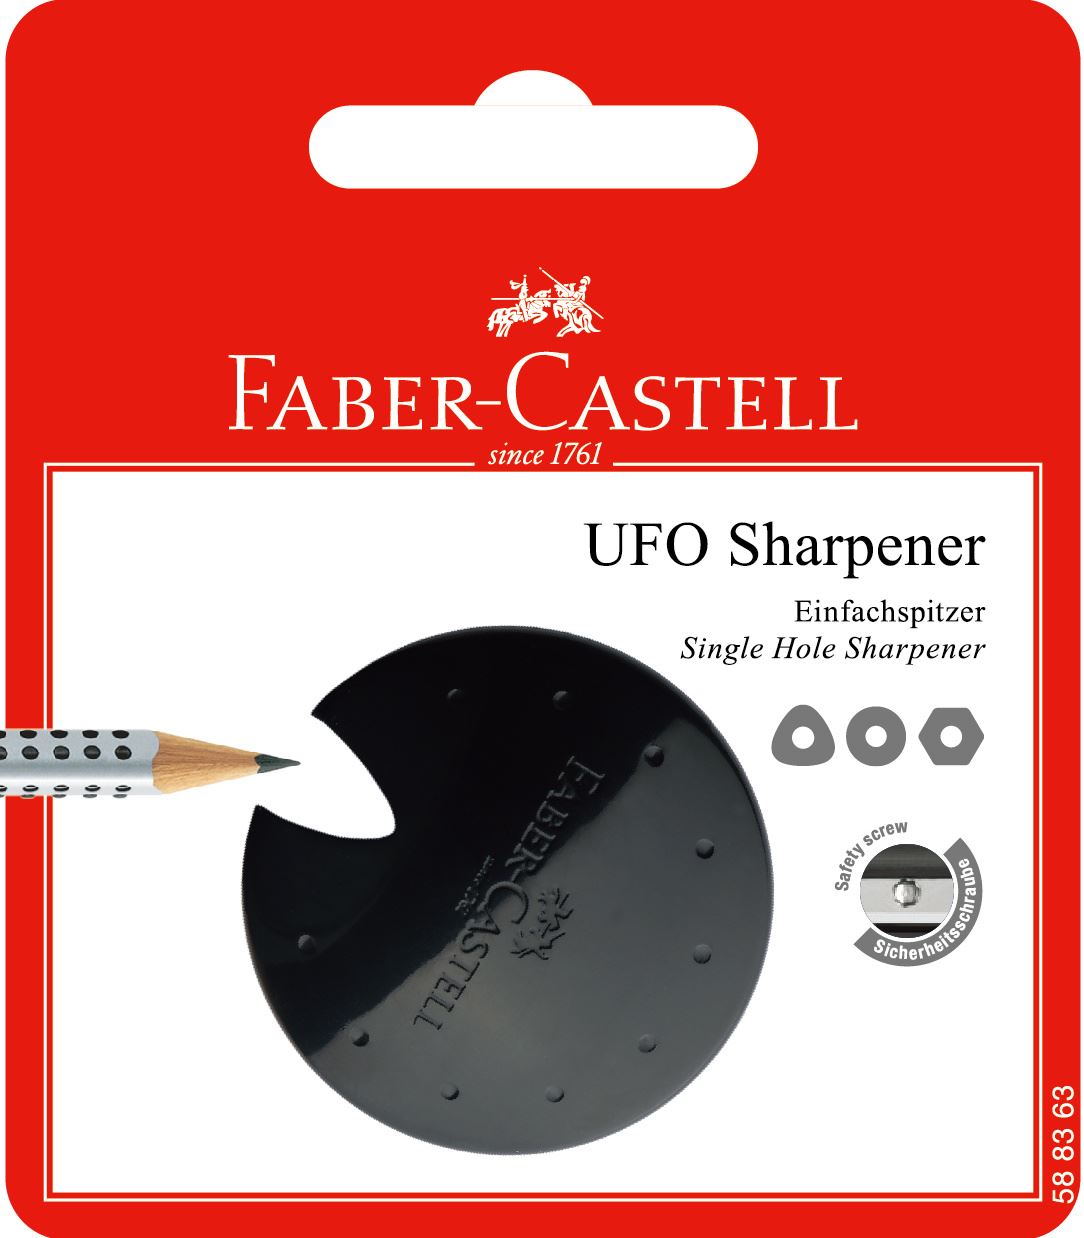 Faber-Castell - Ξύστρα Ufo, κόκκινο/μπλε/μαύρο, σετ, σετ του 1